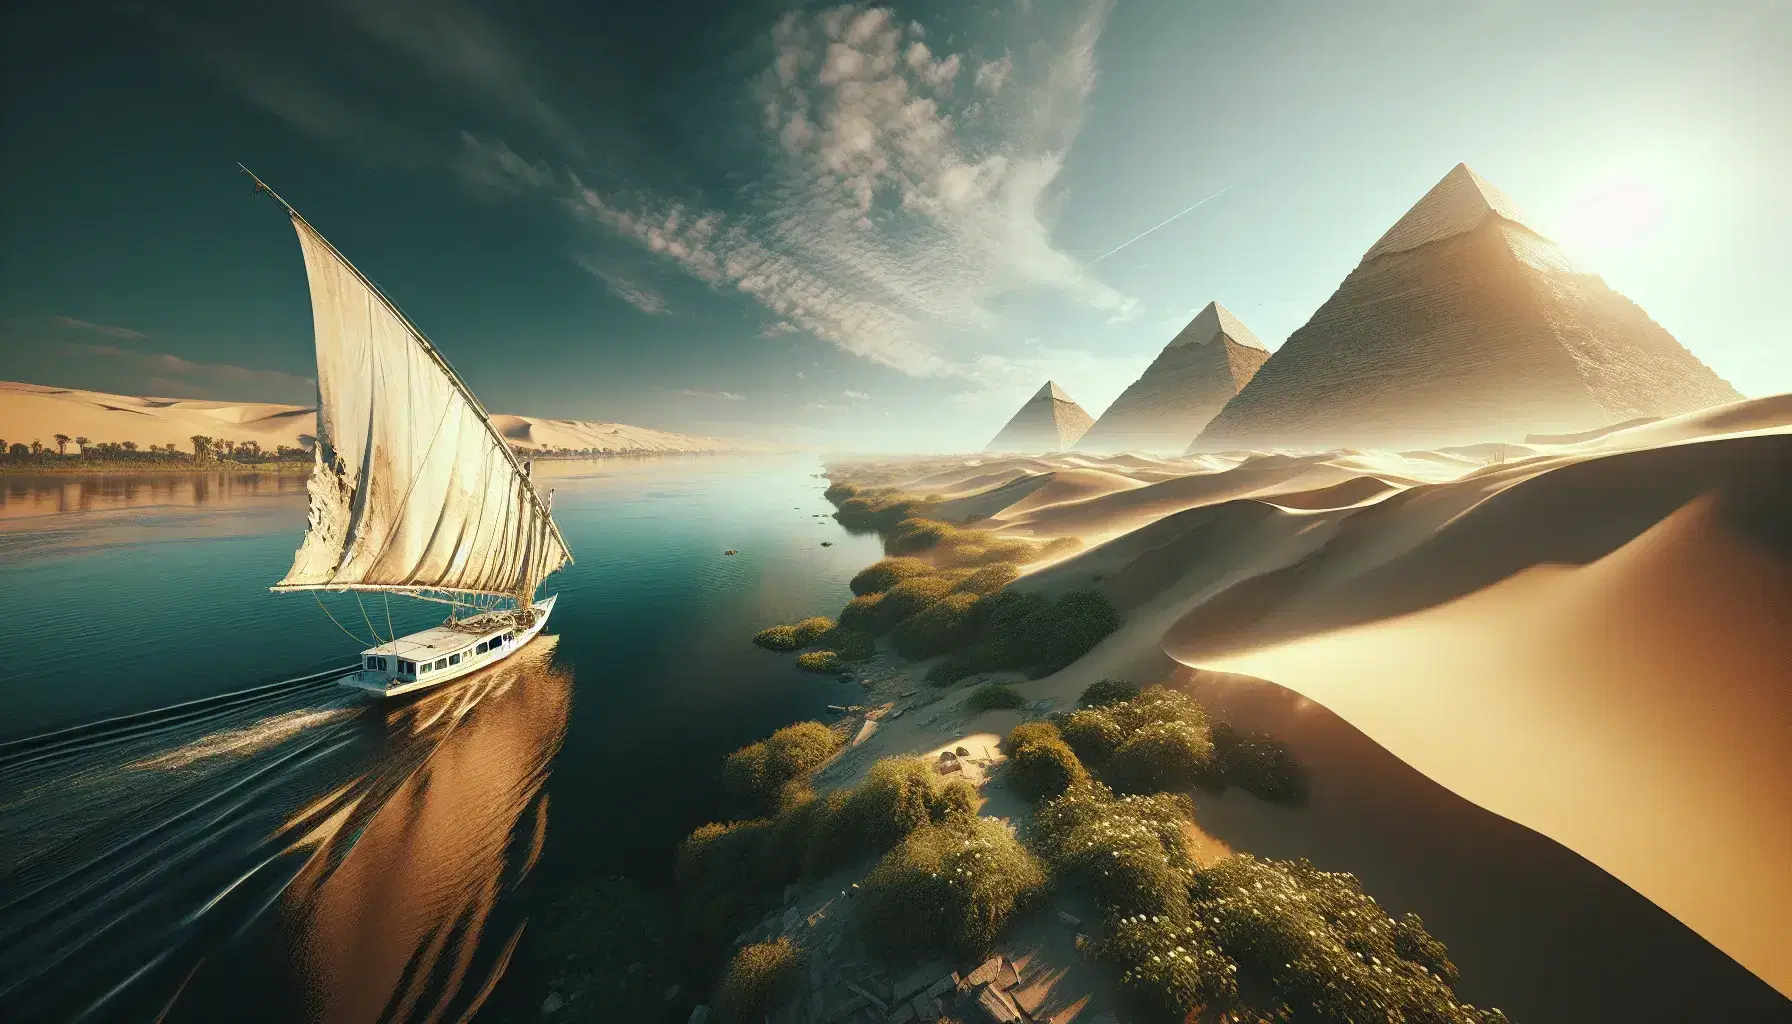 Vista panoramica del fiume Nilo con riflessi del cielo azzurro, vegetazione lussureggiante, deserto e piramidi in lontananza, veleggiata di una feluca.